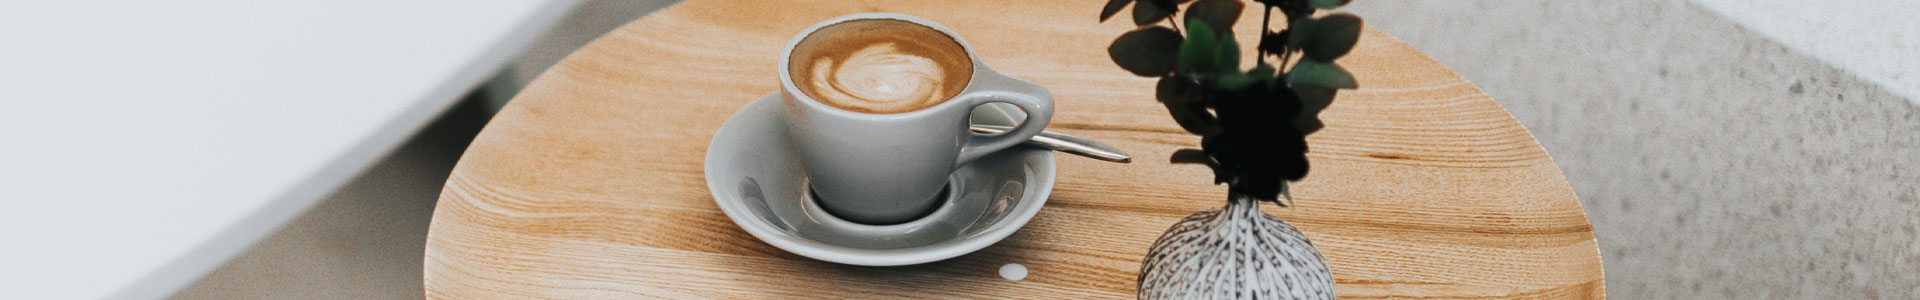 Espresso in weißer Tasse auf rundem braunen Tisch